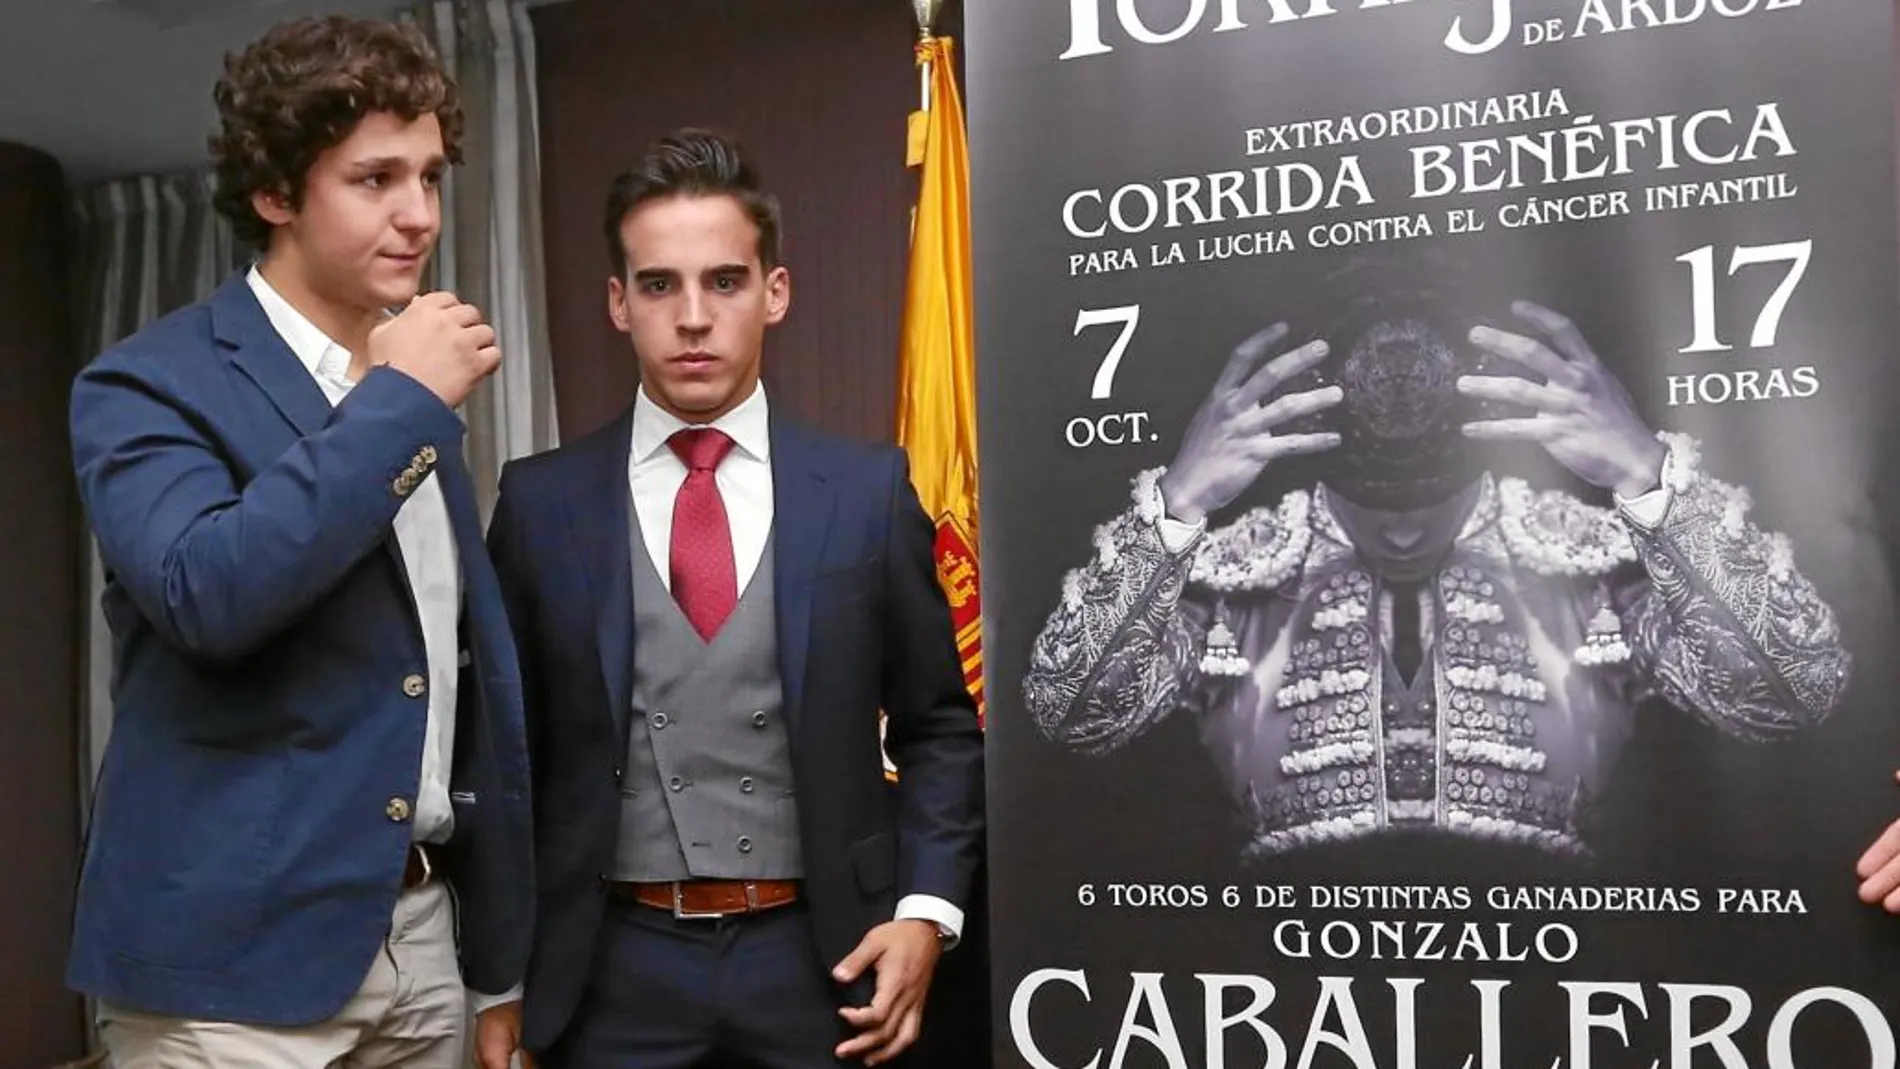 Froilán, junto a su amigo Gonzalo Caballero, posando al lado del cartel de la corrida benéfica que se celebrará el 7